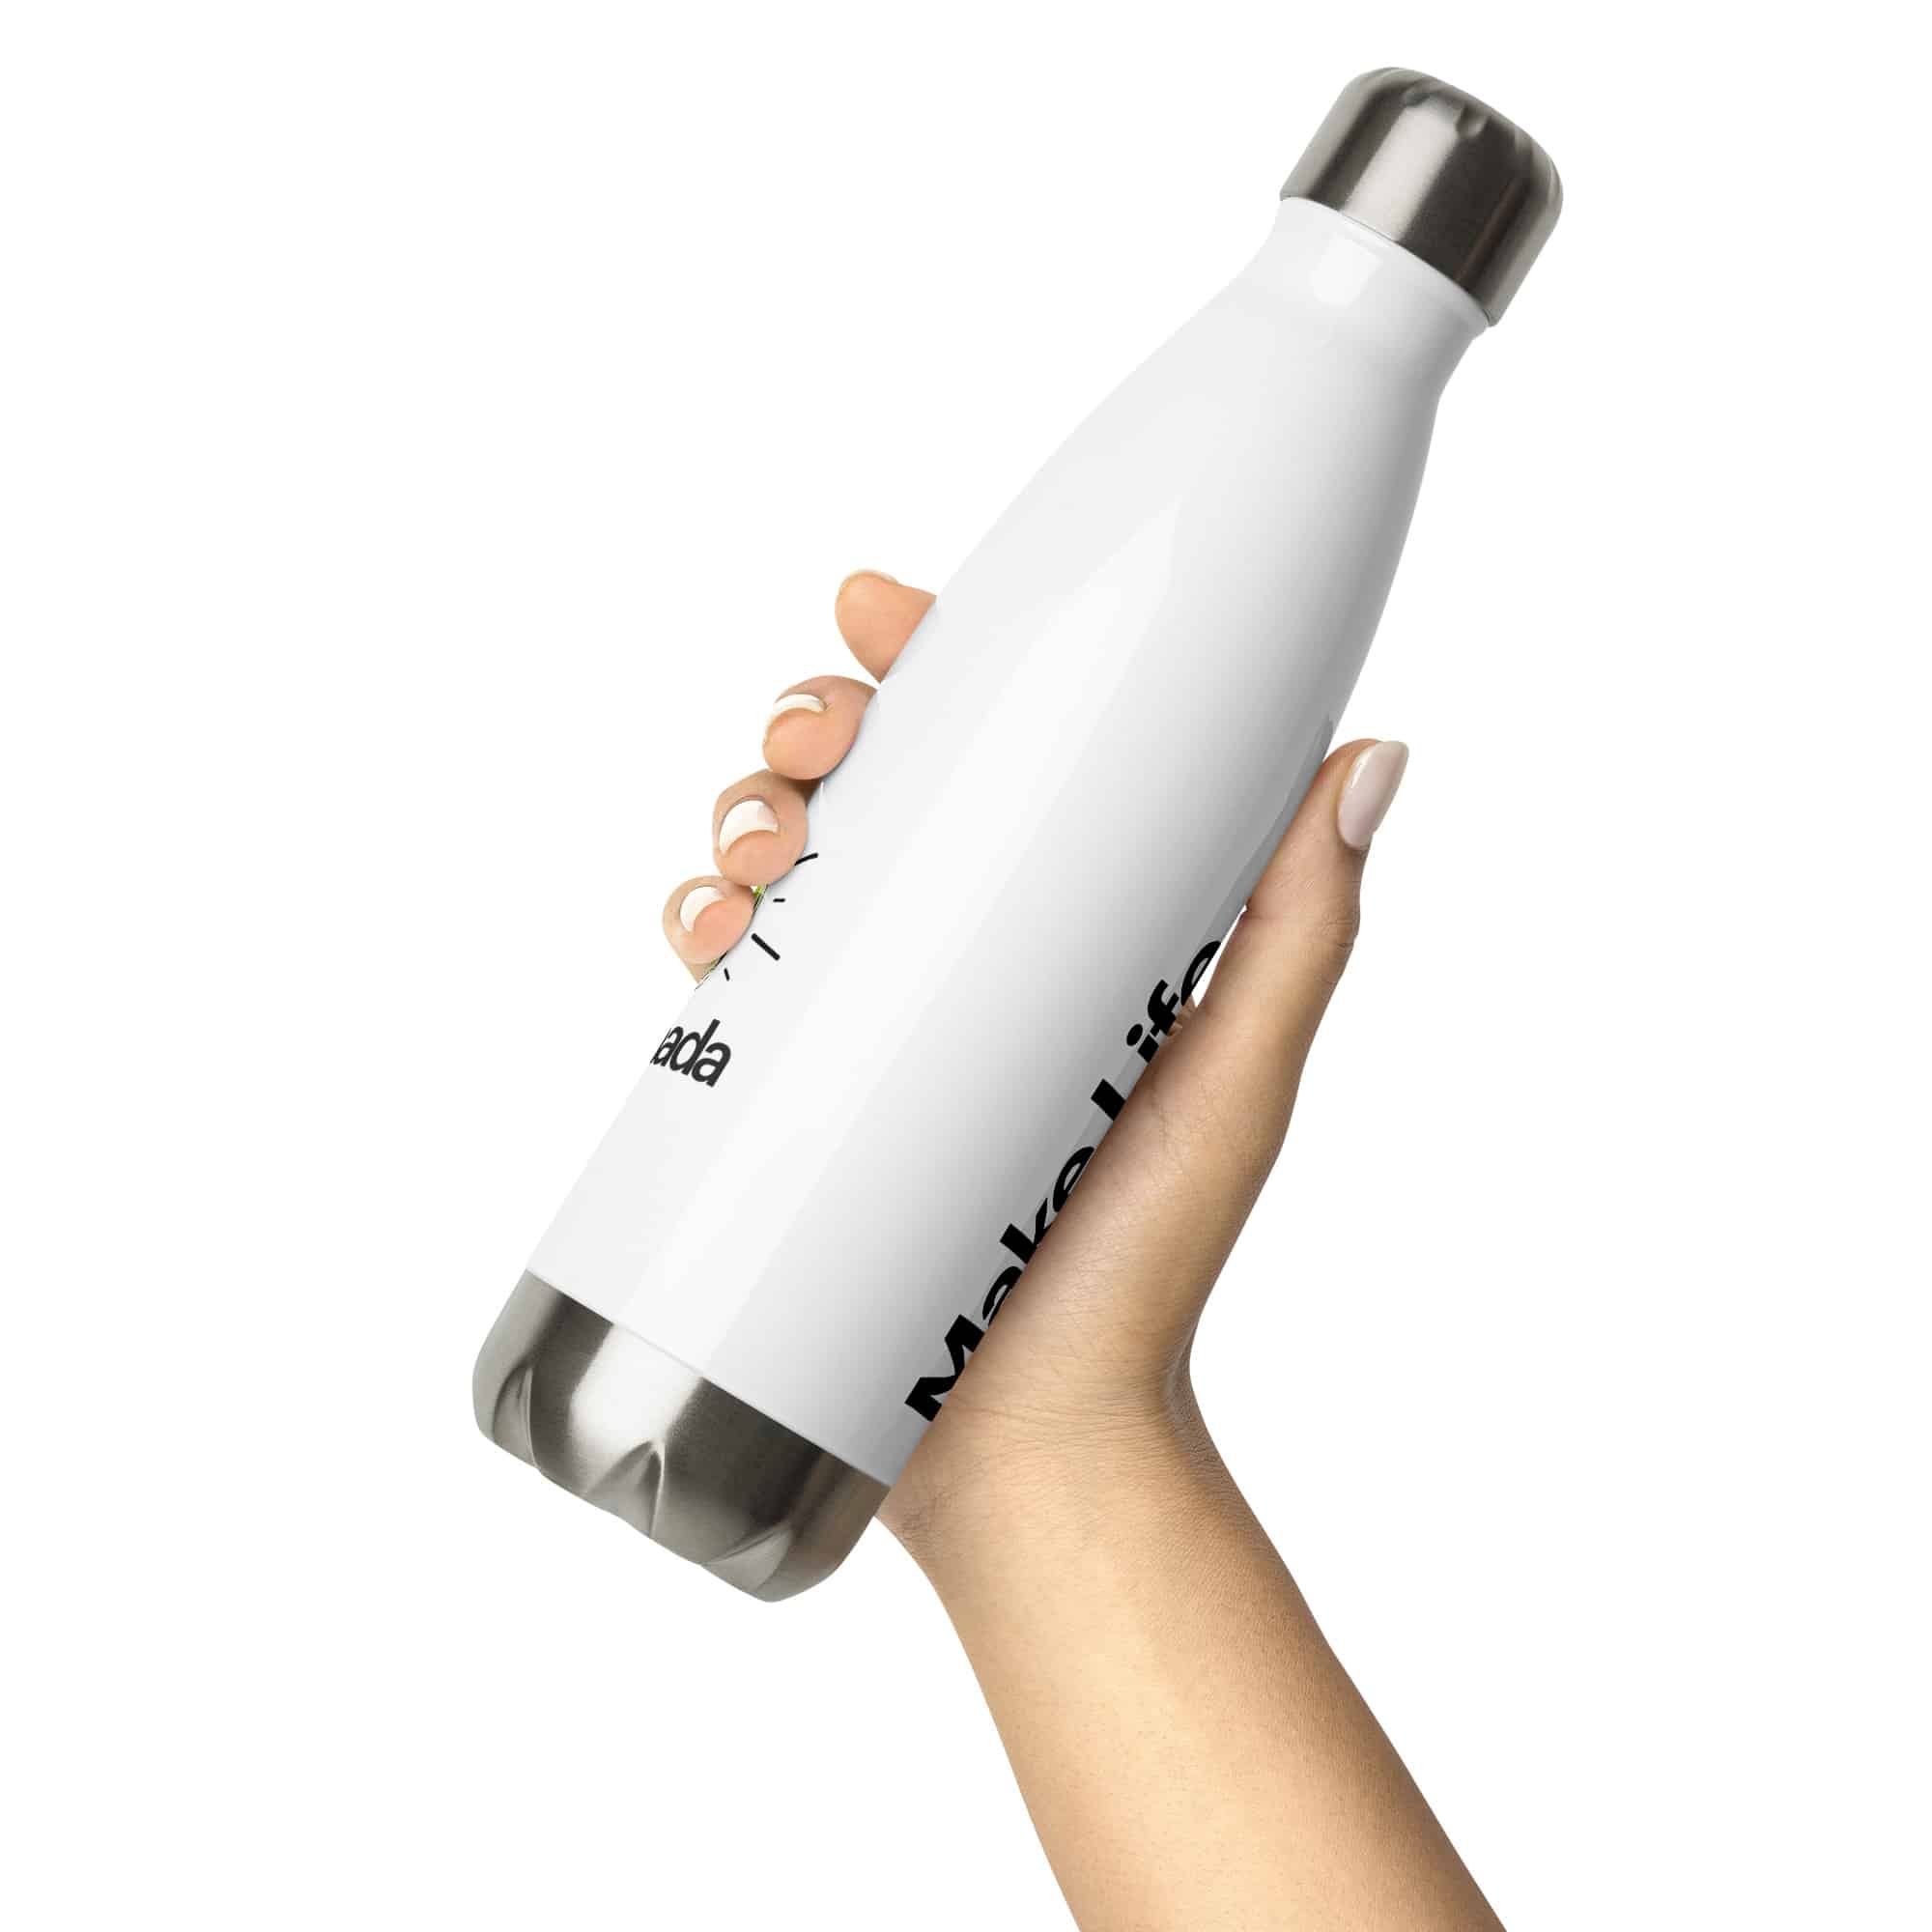 https://lemonadamedia.com/wp-content/uploads/2022/10/stainless-steel-water-bottle-white-17oz-front-2-635bfe9bb58ae.jpg